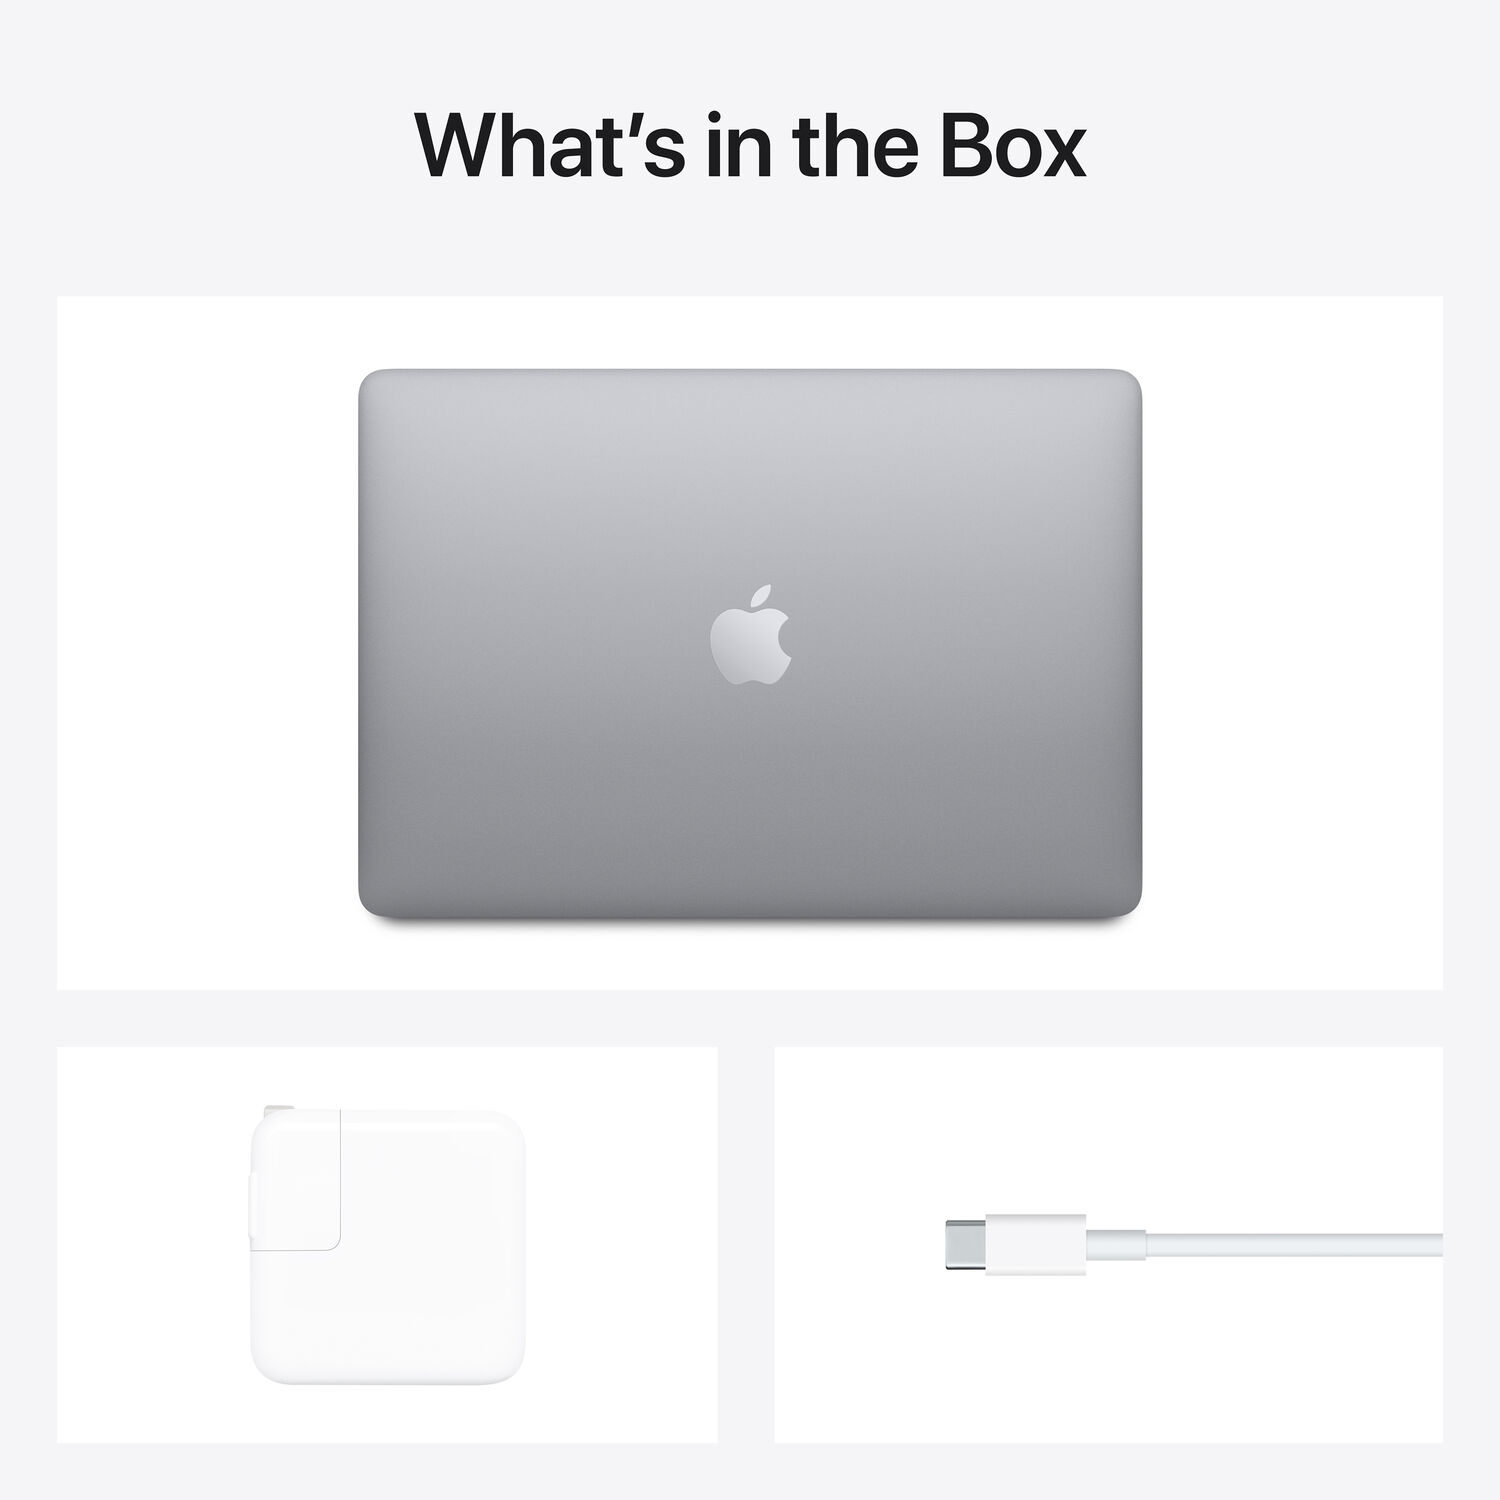 Z124 - MacBook Air 2020 13 Inch - Apple M1 8-Core / Option Ram 16GB / 256GB - Space Gray (Chính hãng)